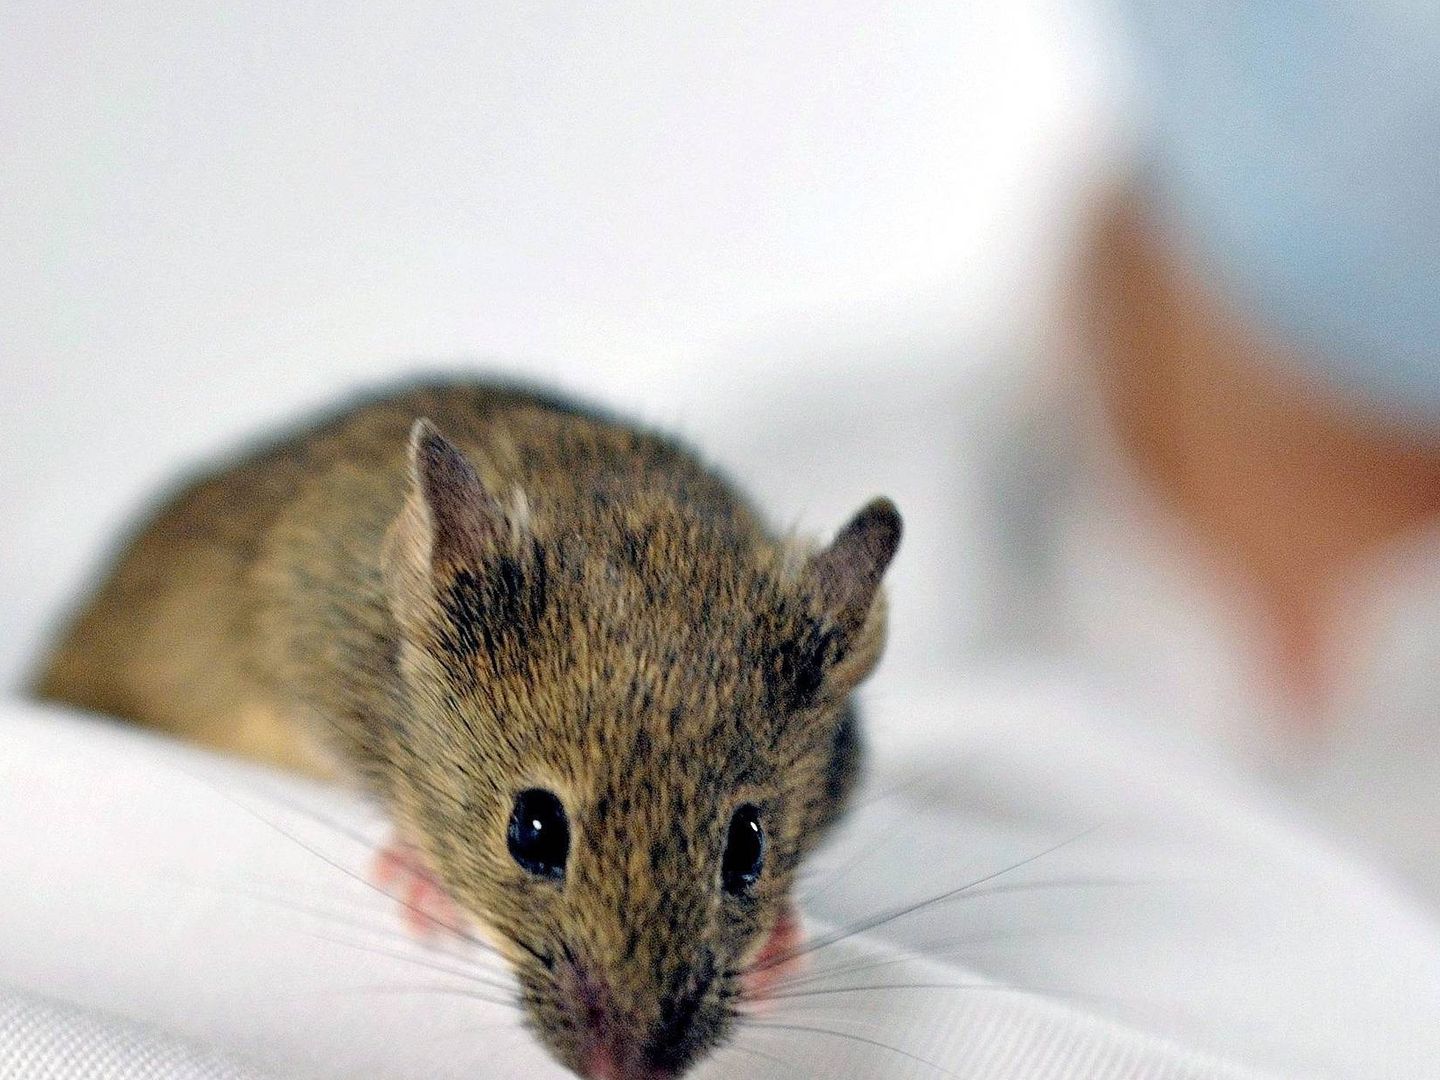 Los ratones en aislamiento también tienen 'antojos' sociales